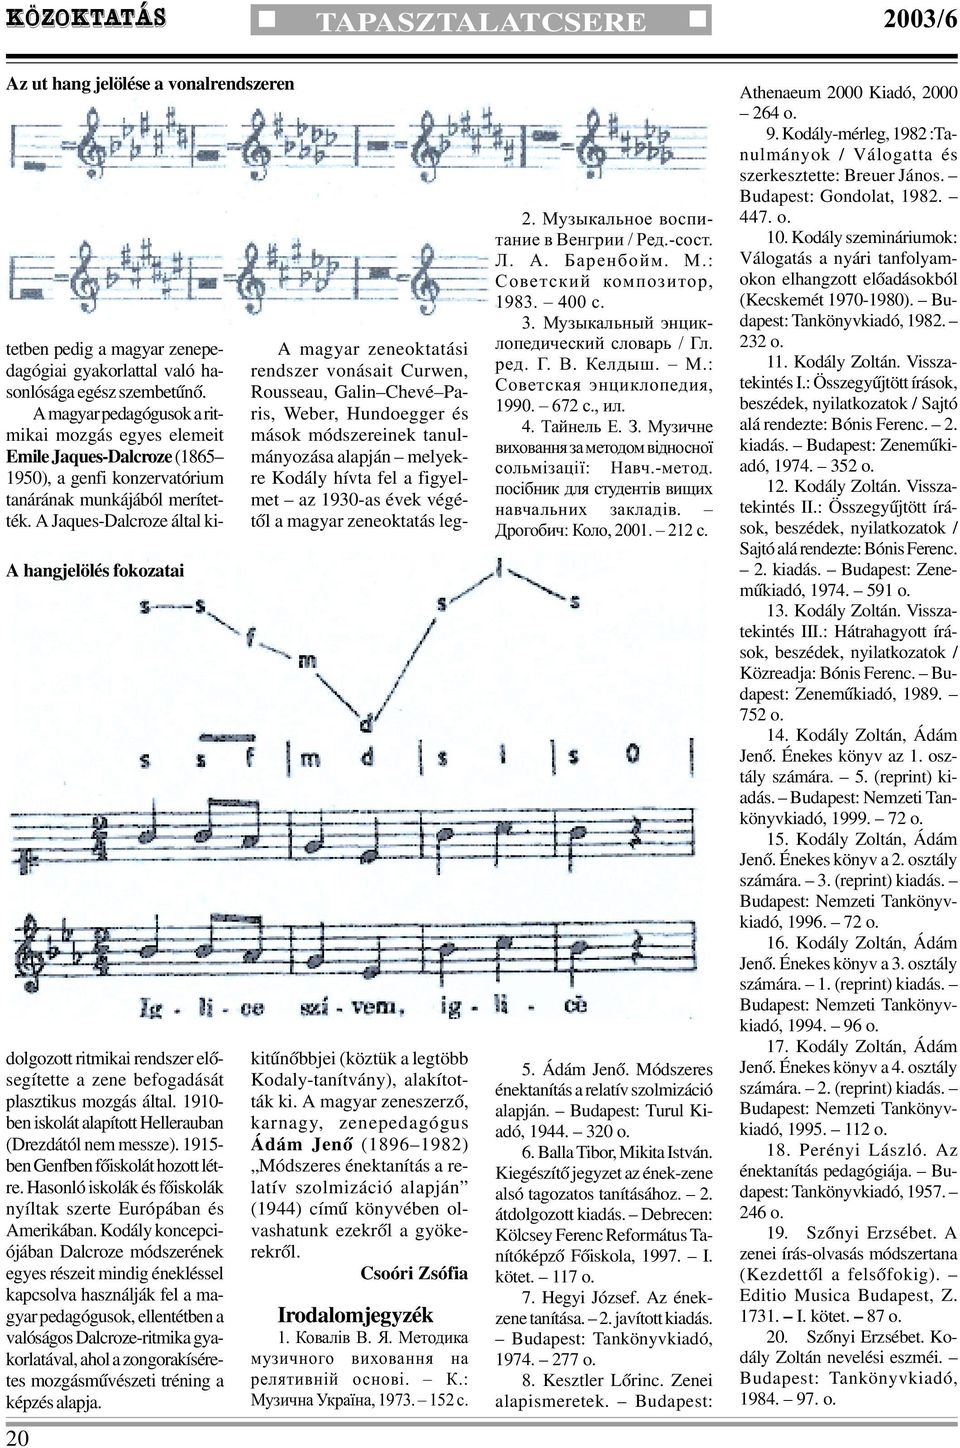 A Jaques-Dalcroze által kidolgozott ritmikai rendszer elõsegítette a zene befogadását plasztikus mozgás által. 1910- ben iskolát alapított Hellerauban (Drezdától nem messze).